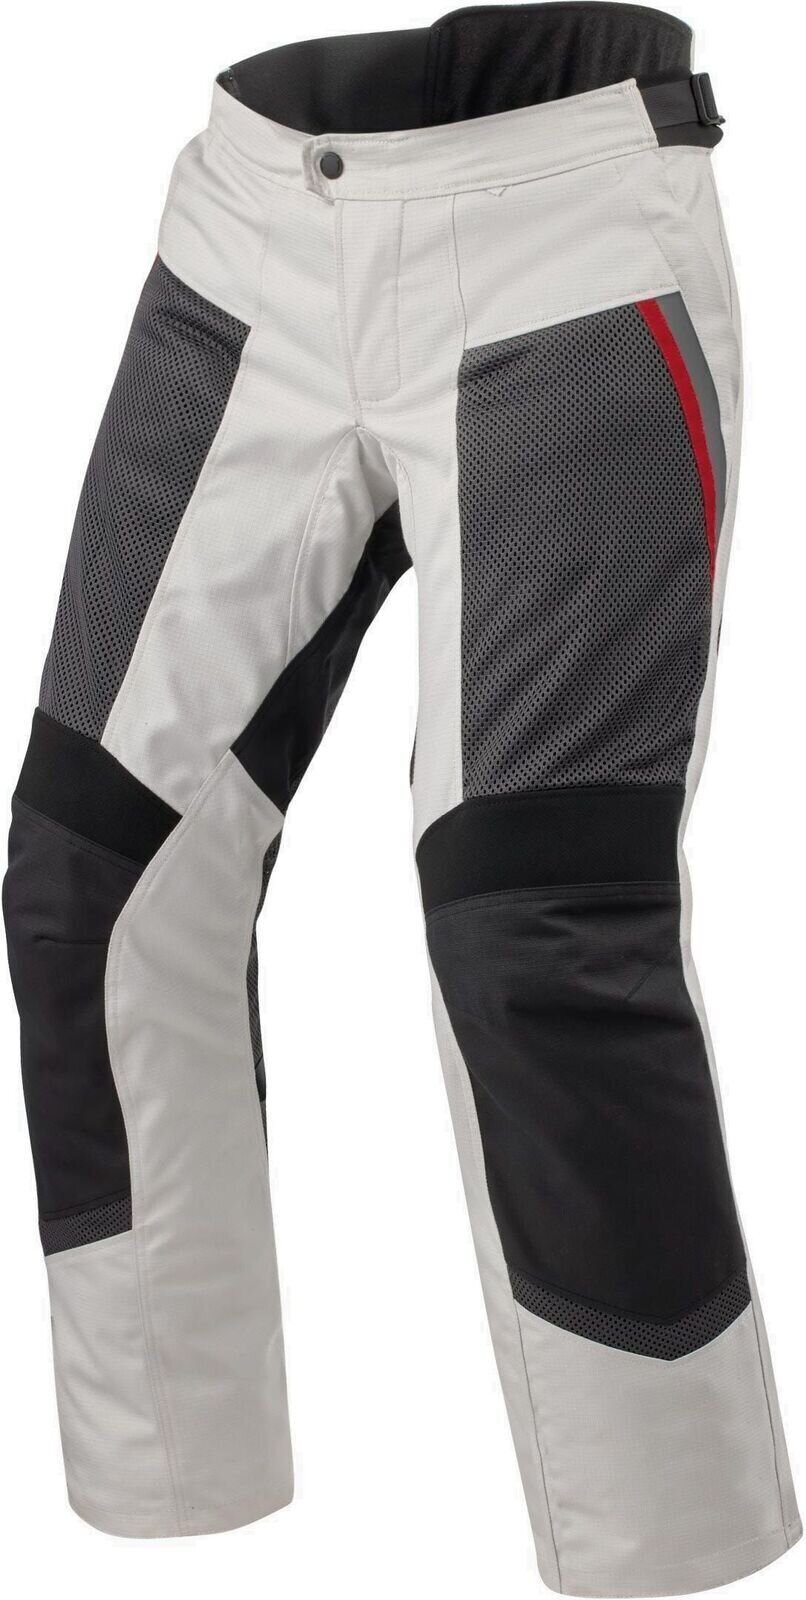 Παντελόνια Textile Rev'it! Pants Tornado 4 H2O Silver/Black S Regular Παντελόνια Textile